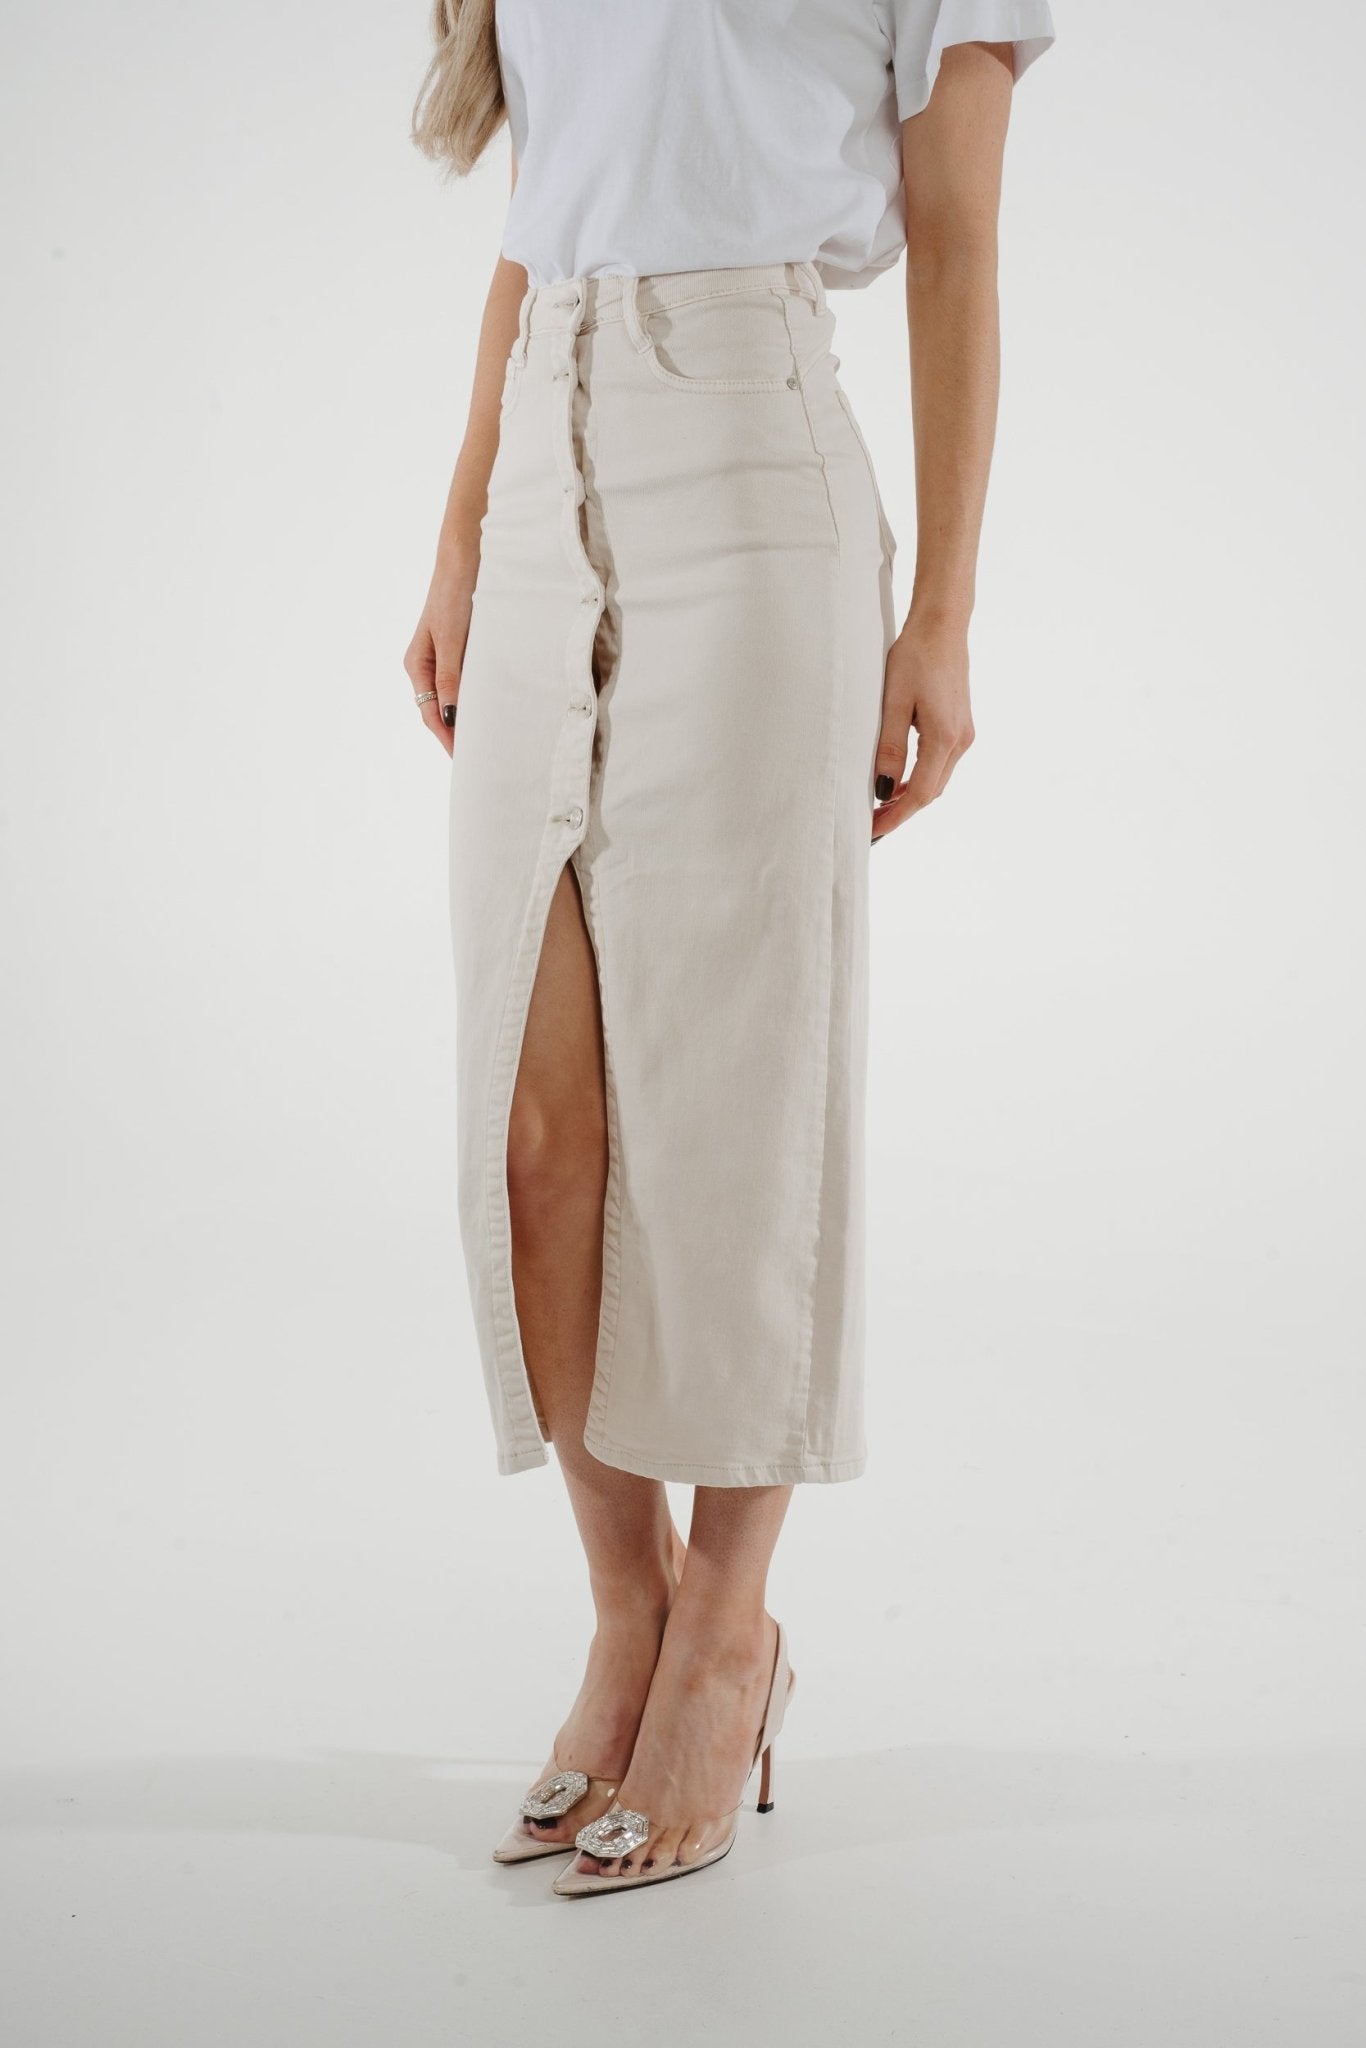 Danni Denim Midi Skirt In Cream - The Walk in Wardrobe